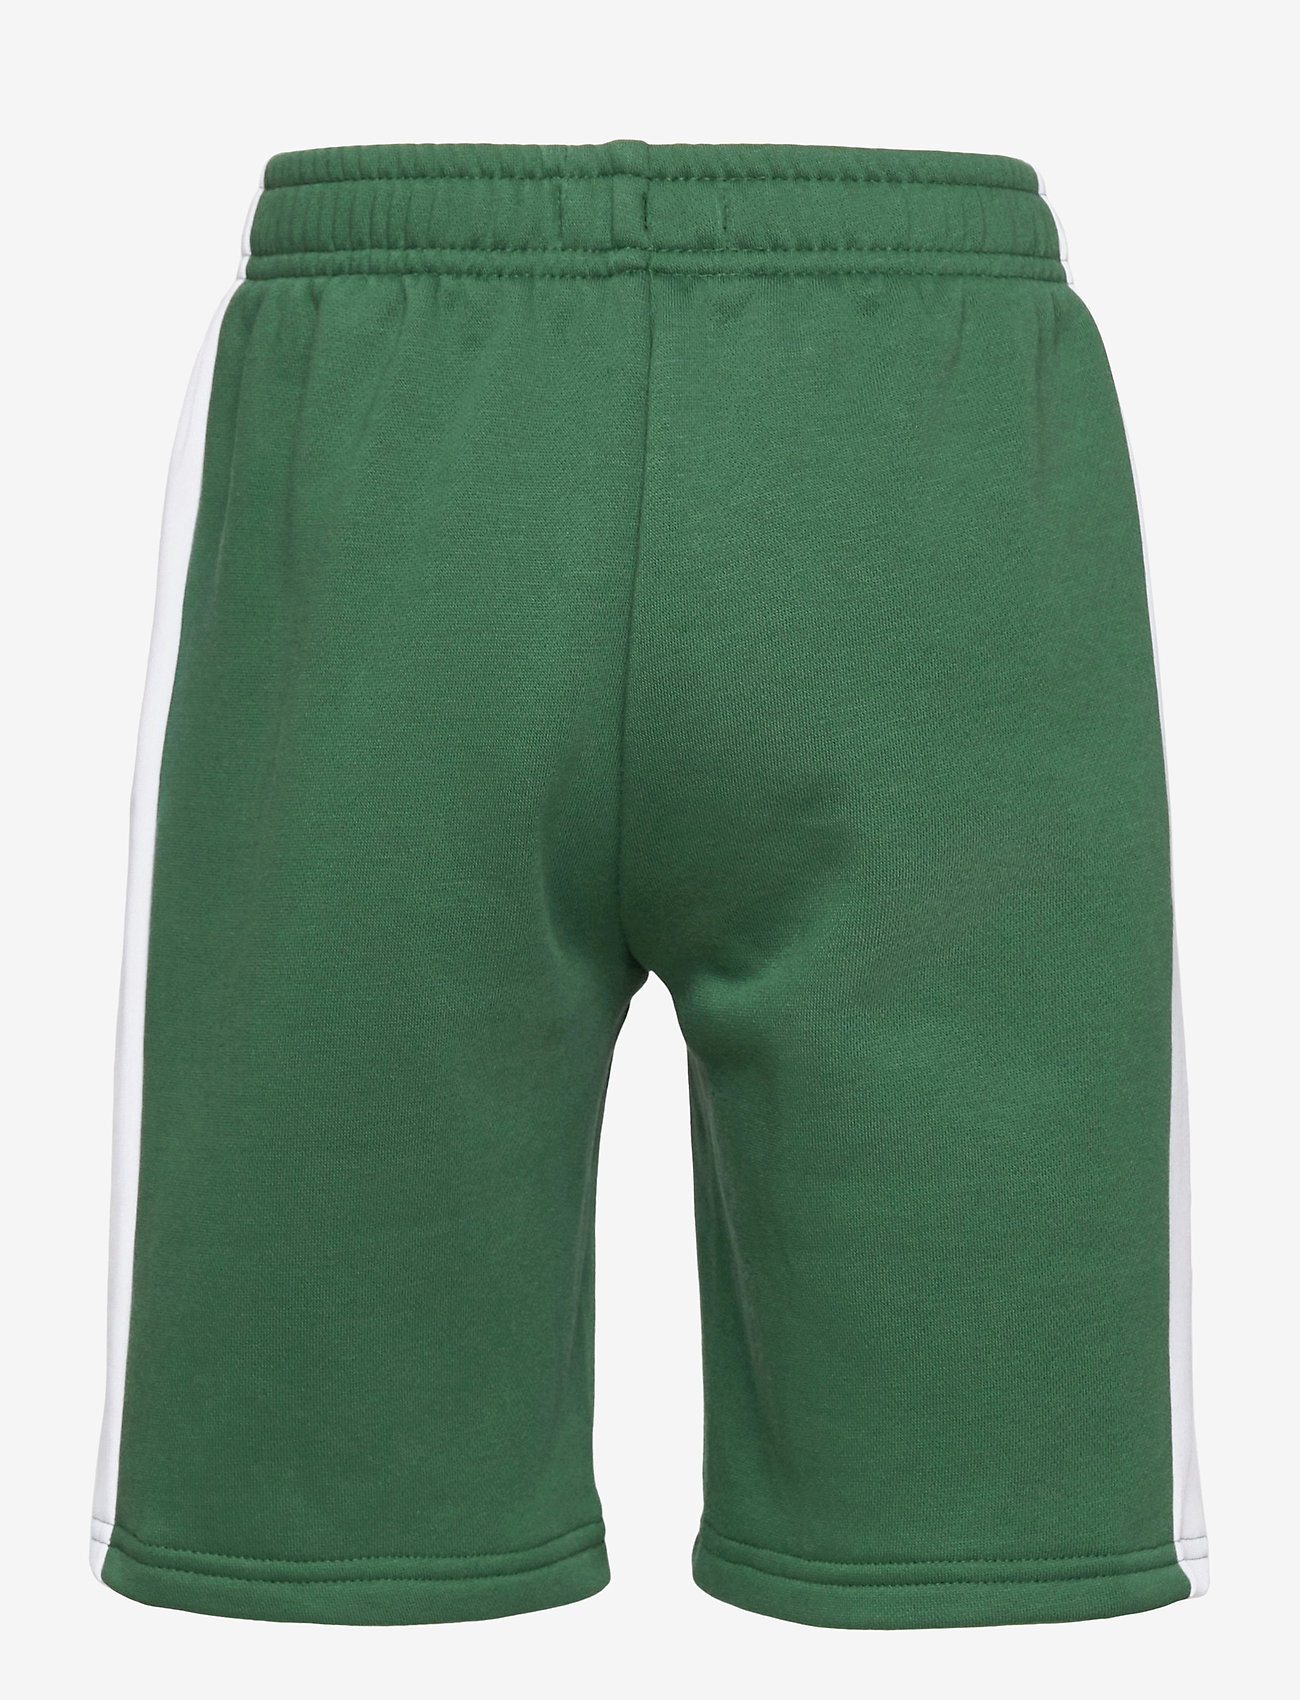 Children Shorts (Green/white) (50 